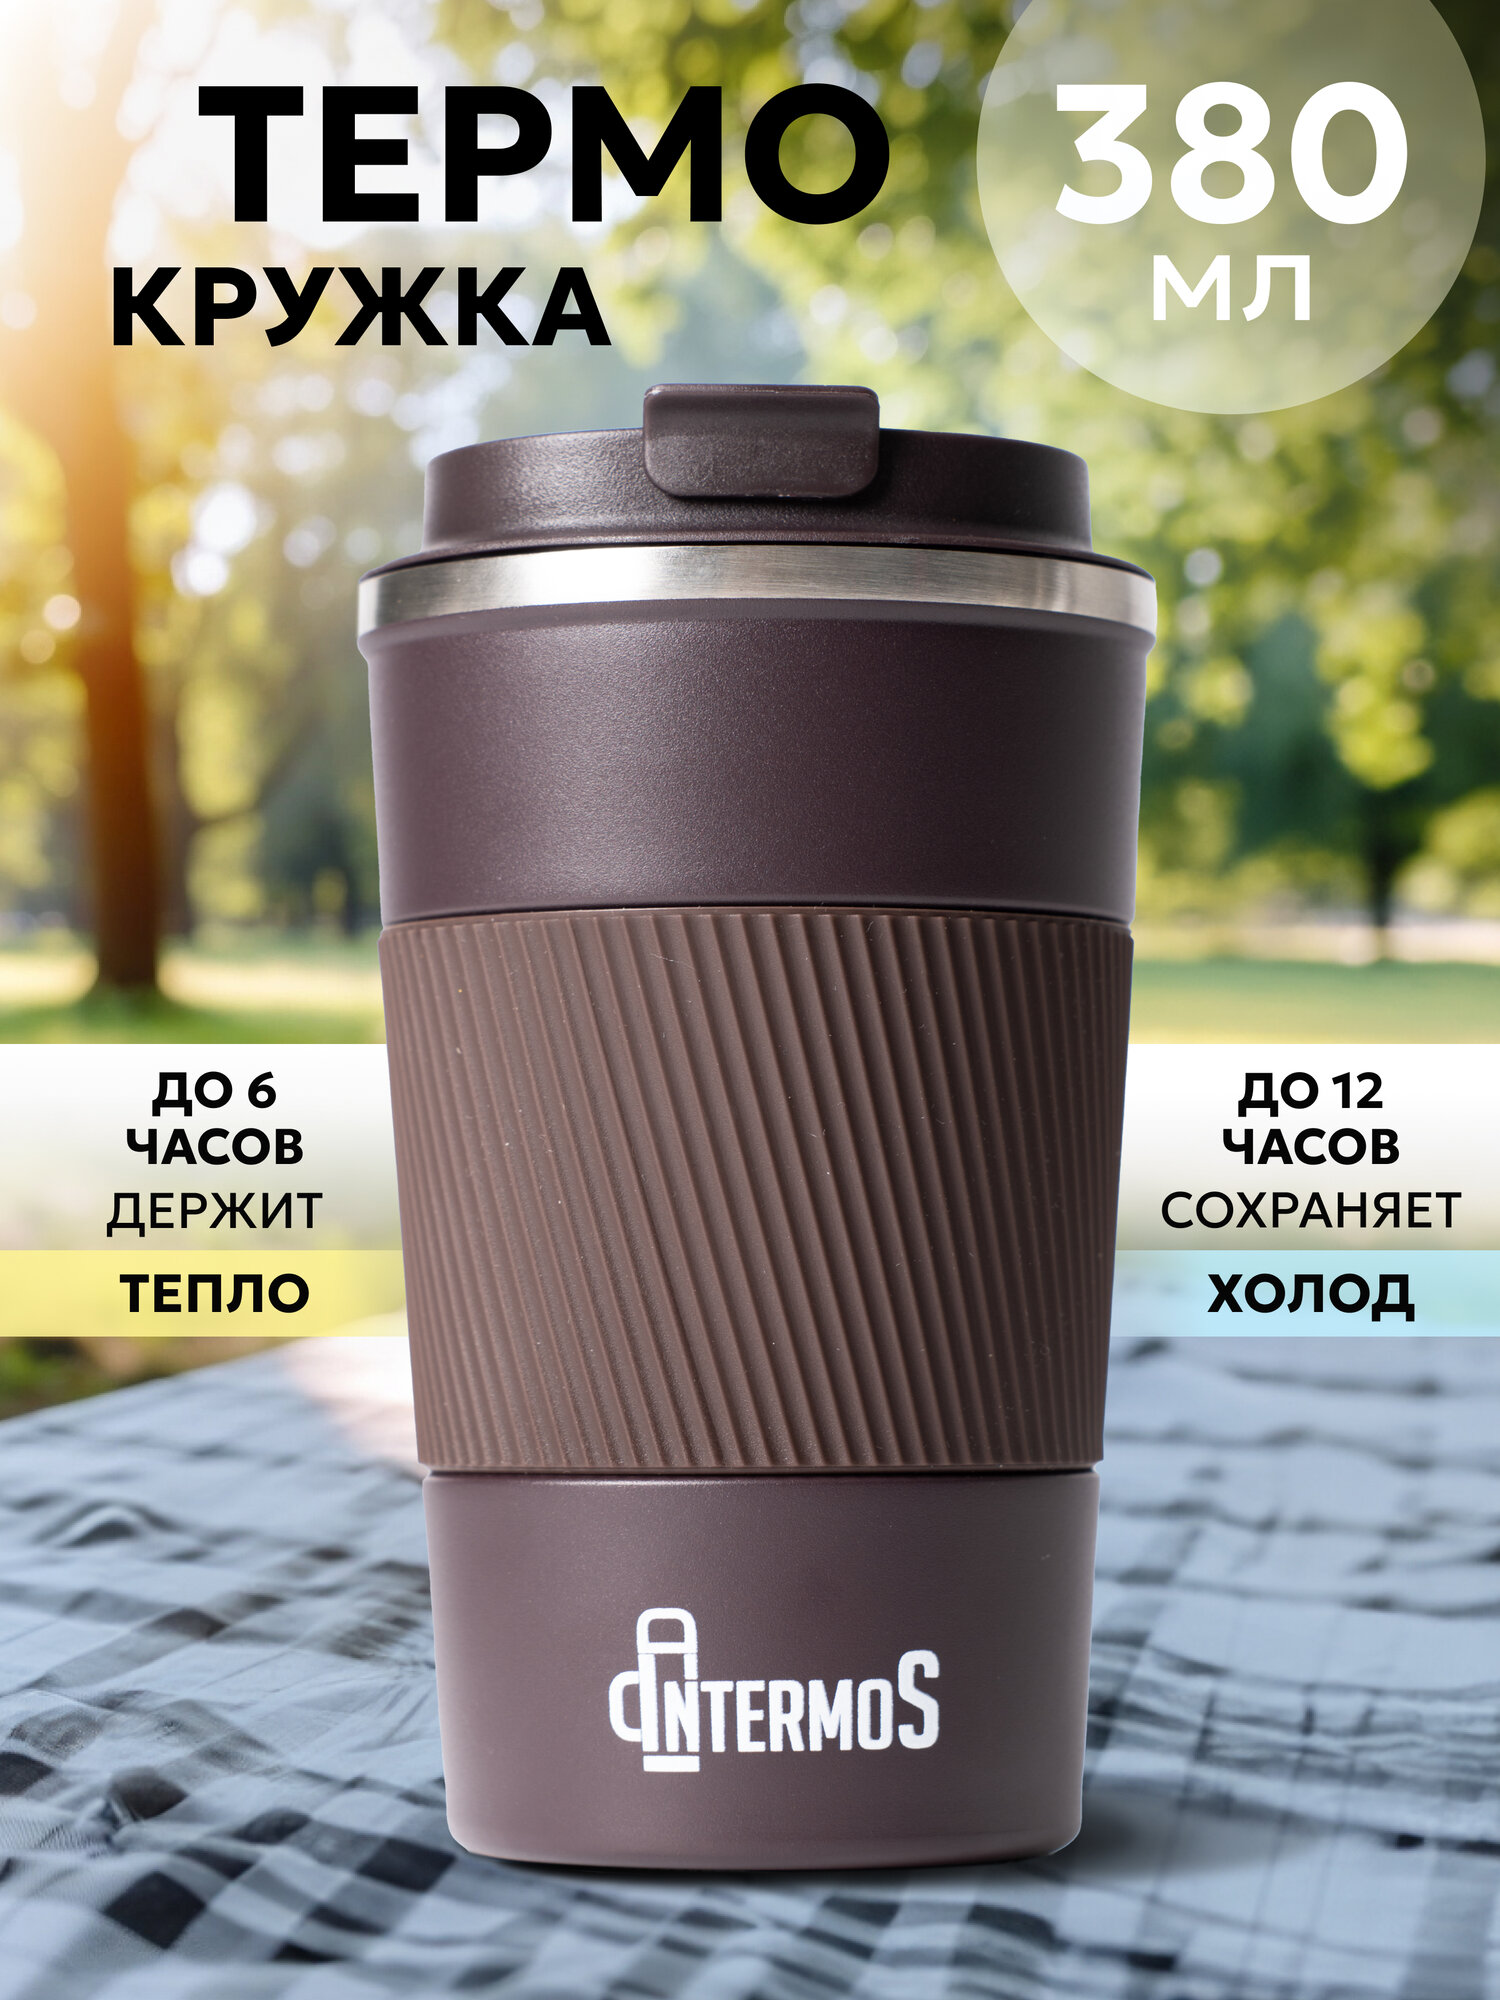 Термокружка Intermos для кофе и чая 380 мл, из нержавеющей стали, цвет коричневый